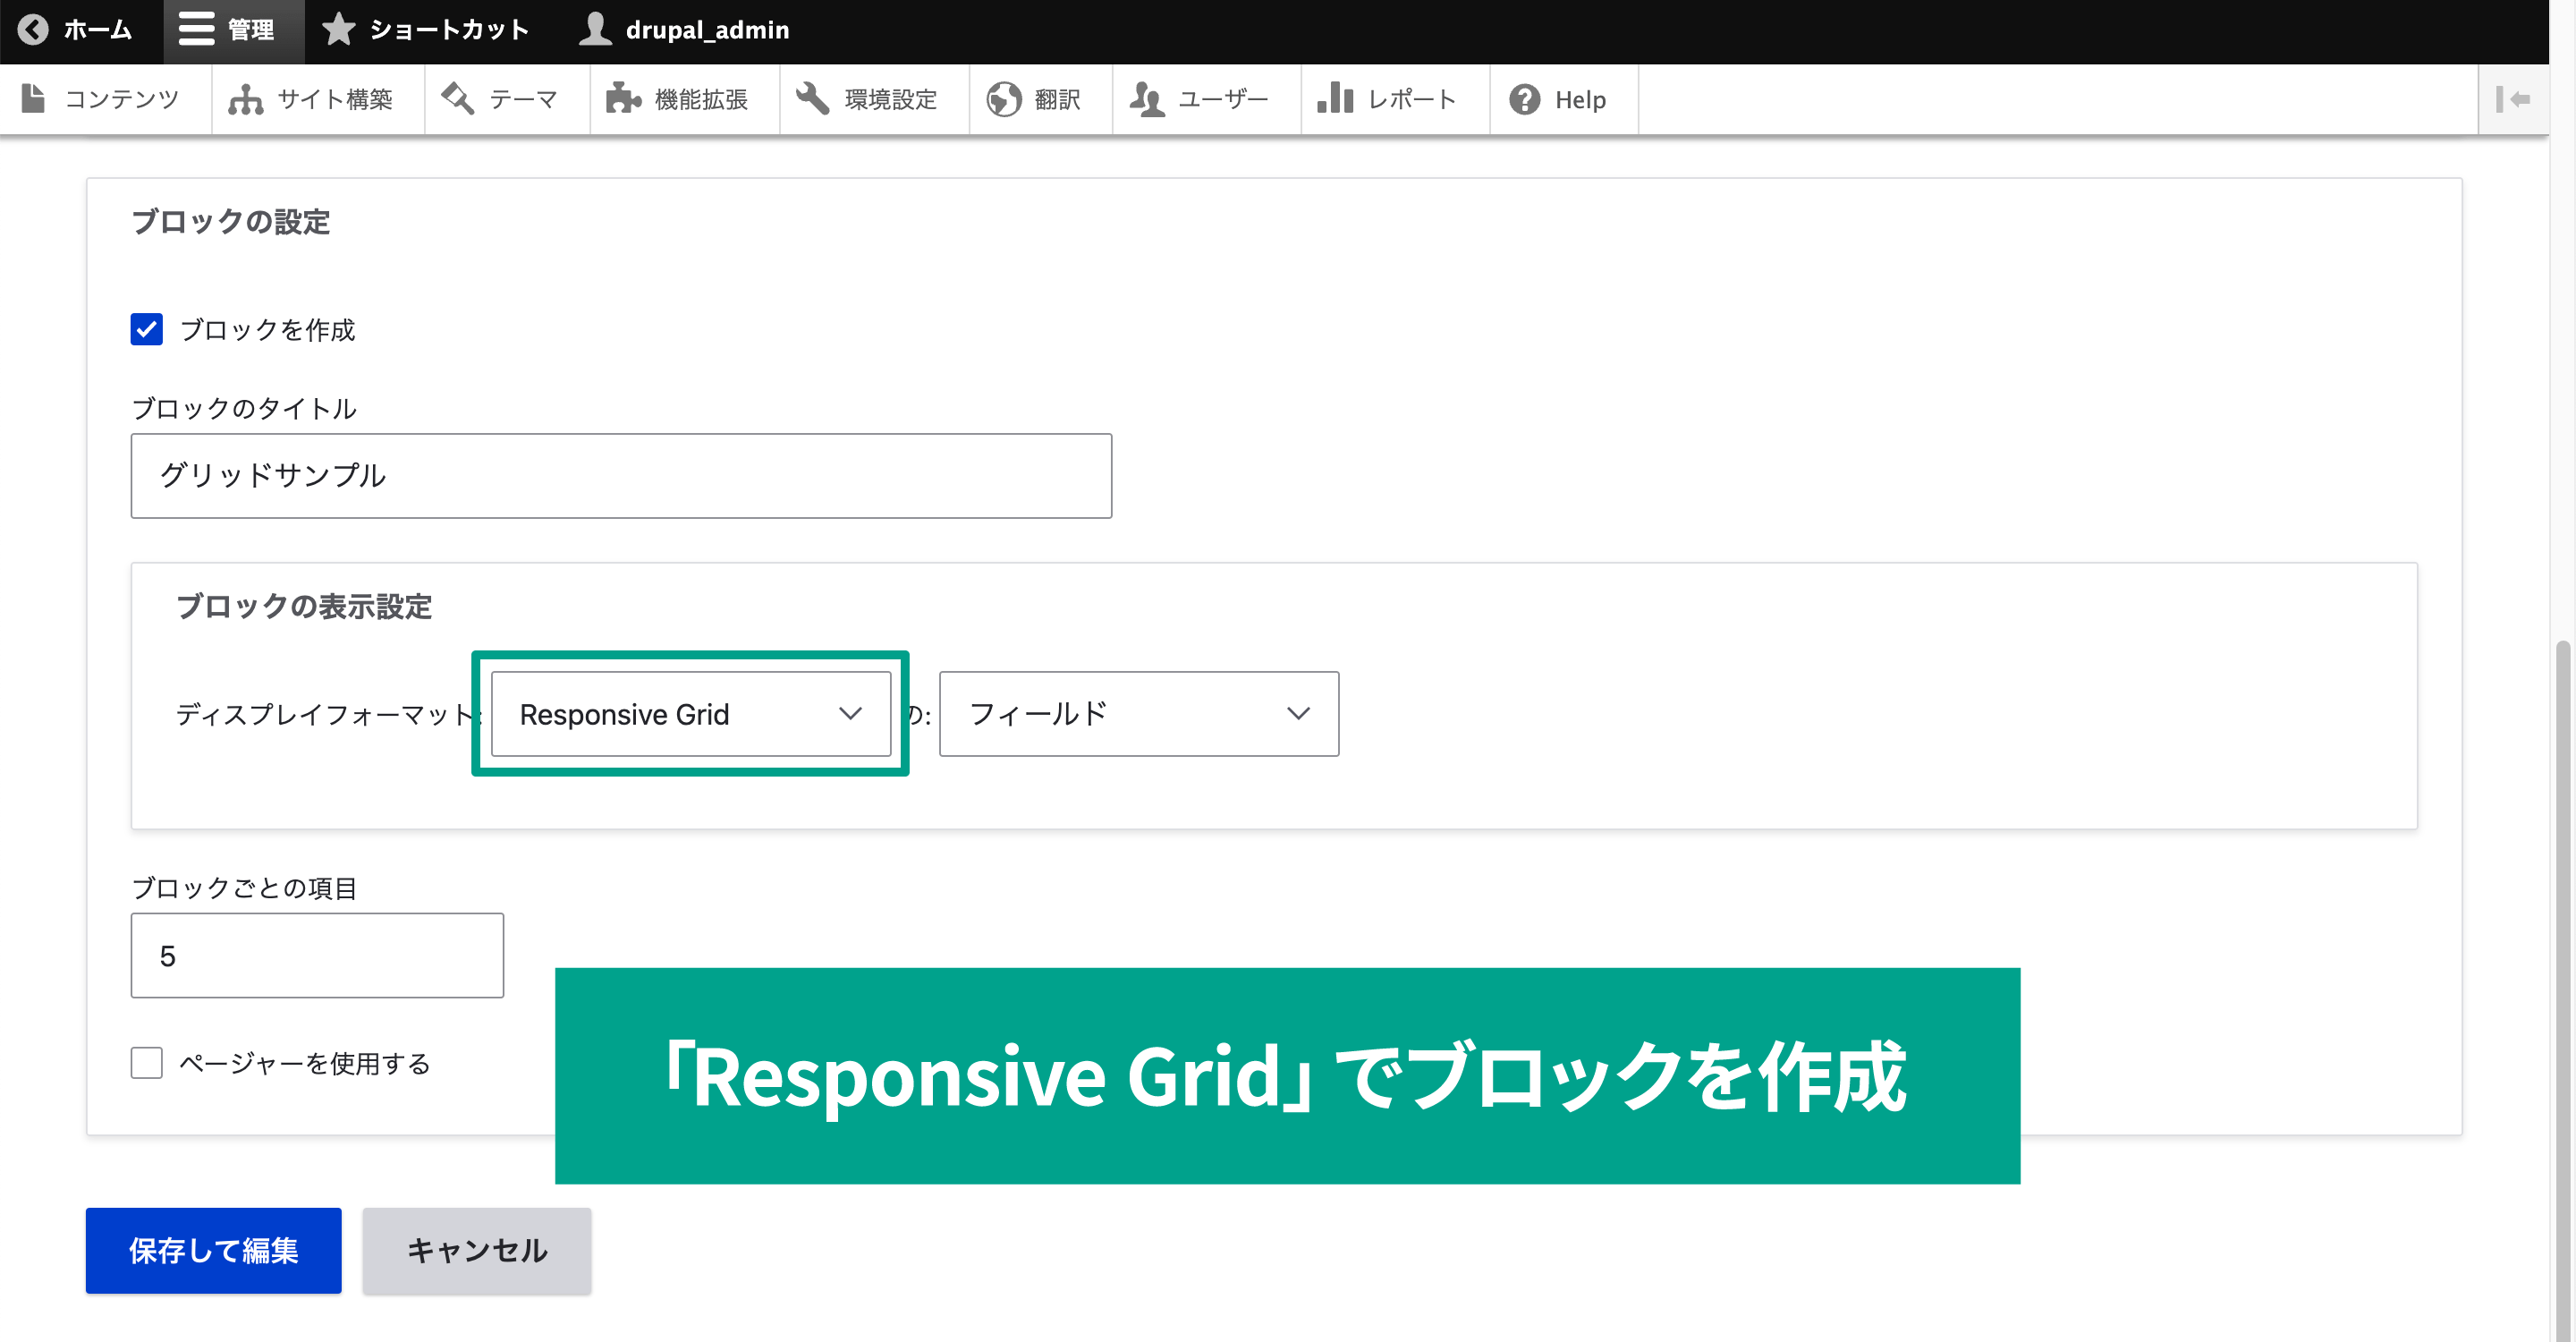 ブロックの表示設定タブから、ディスプレイフォーマットを「Responsive Grid」を選択する。